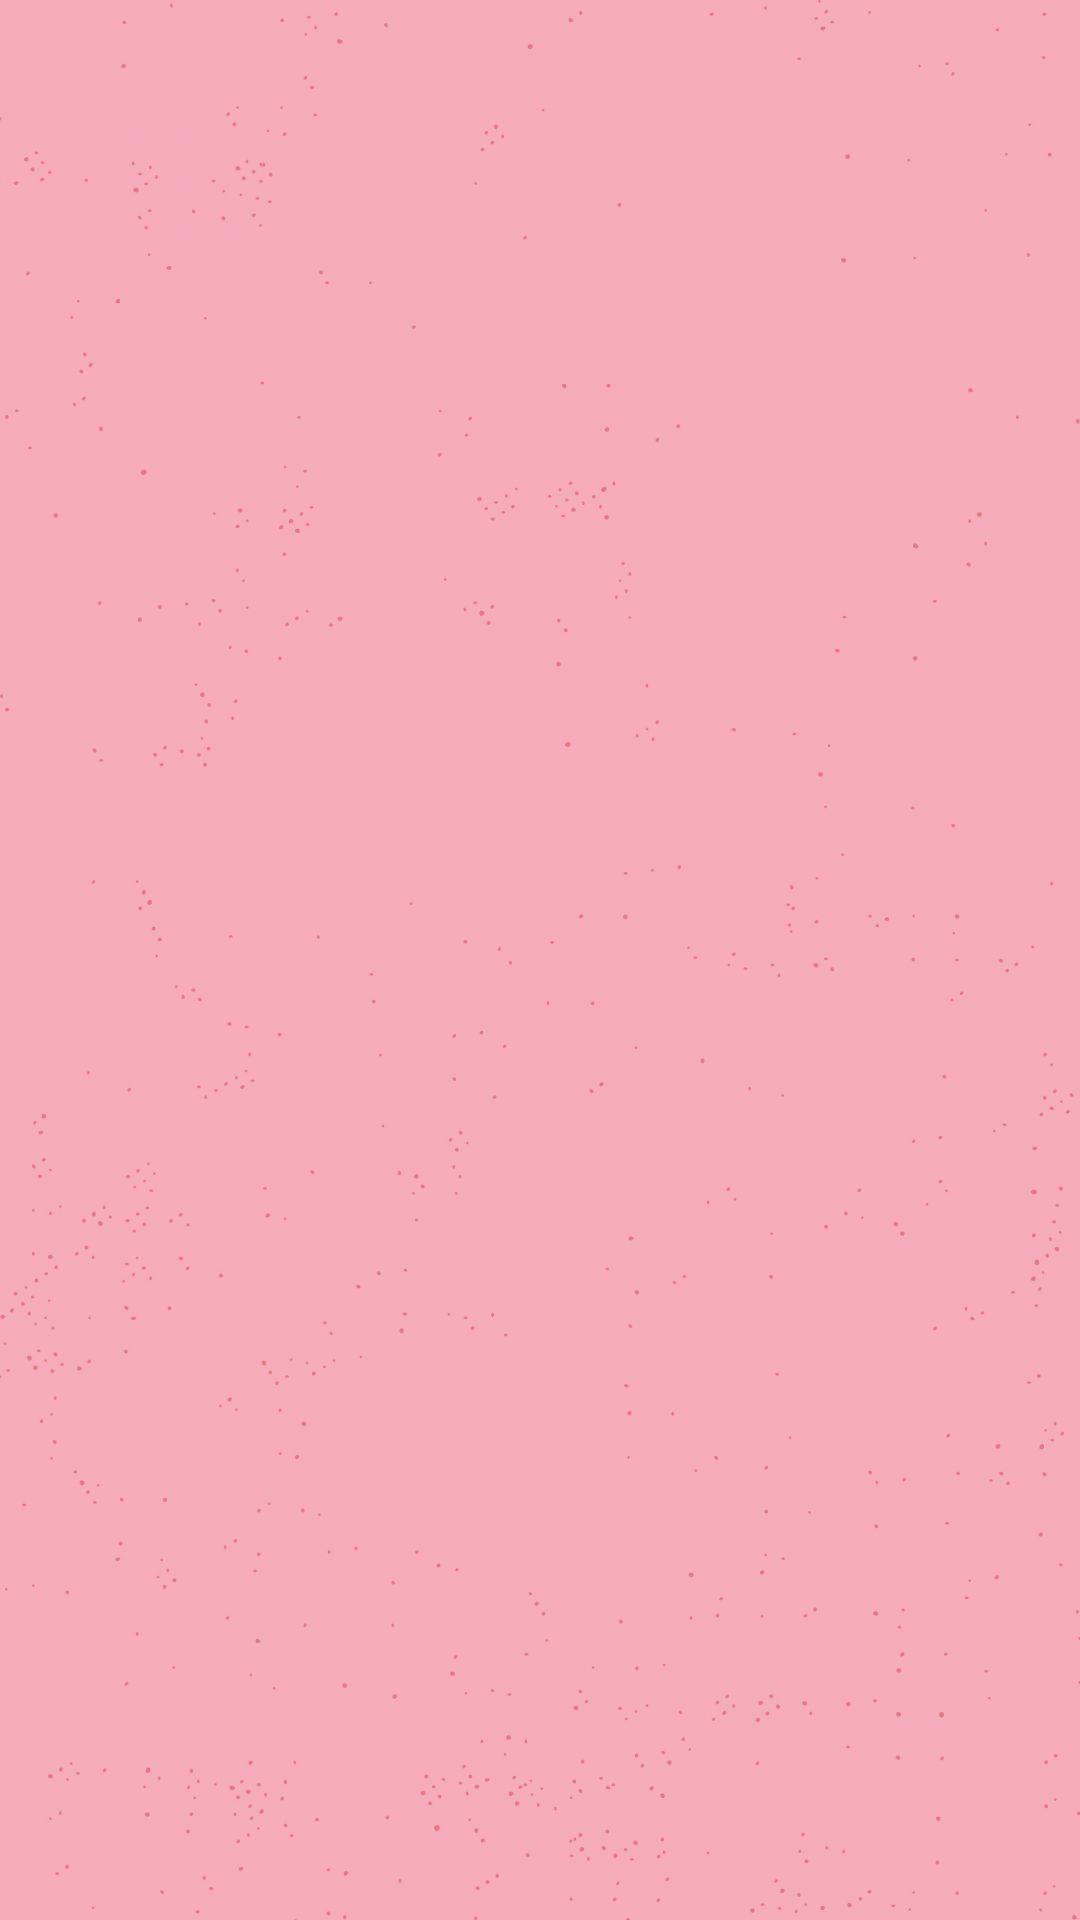 Pastel Pink Color Wallpapers - Top Những Hình Ảnh Đẹp